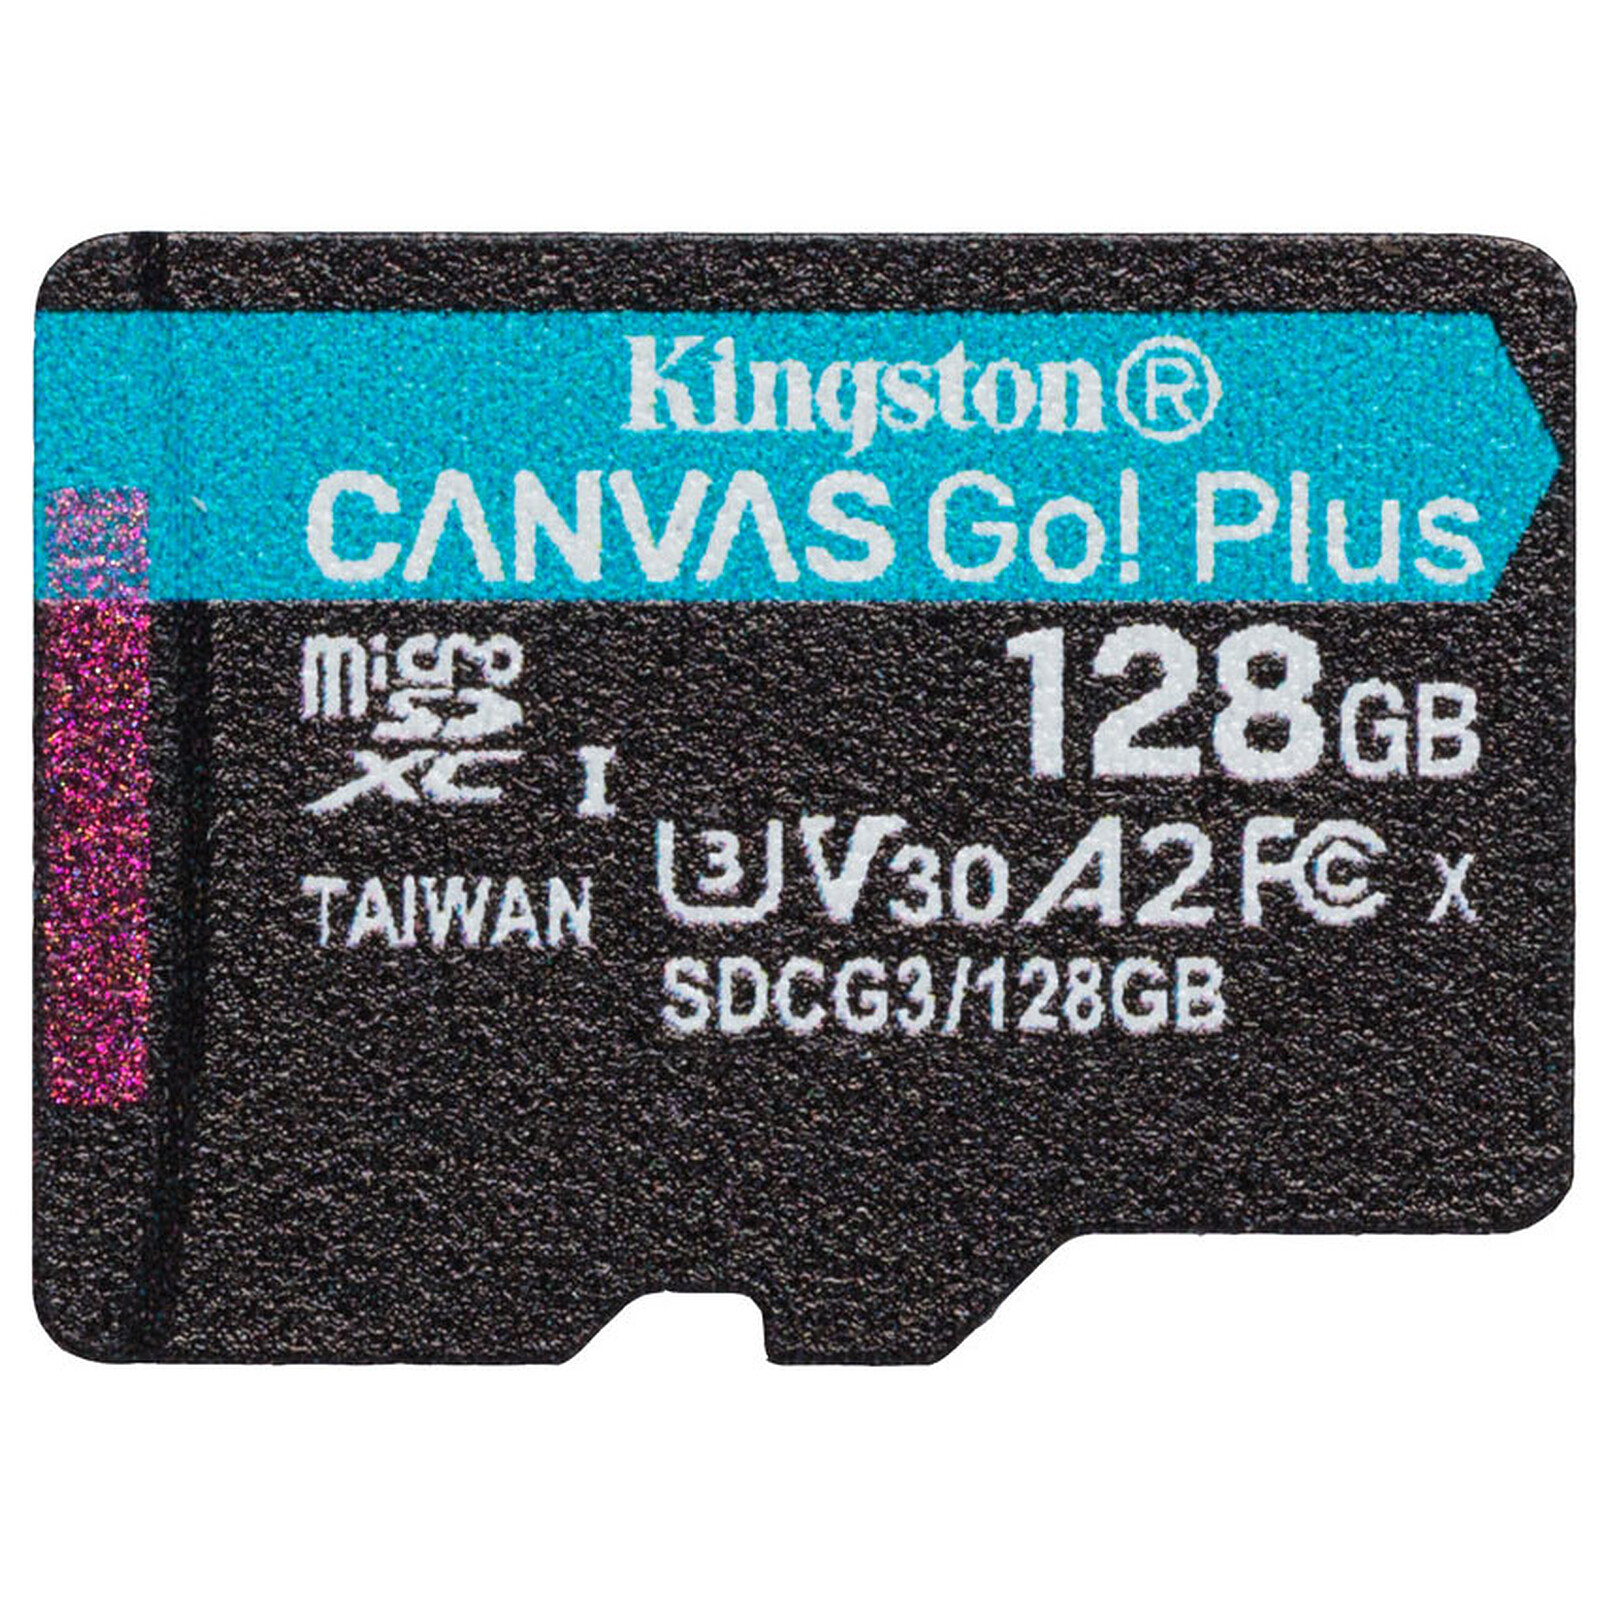 Guide des types de cartes SD et microSD - Kingston Technology